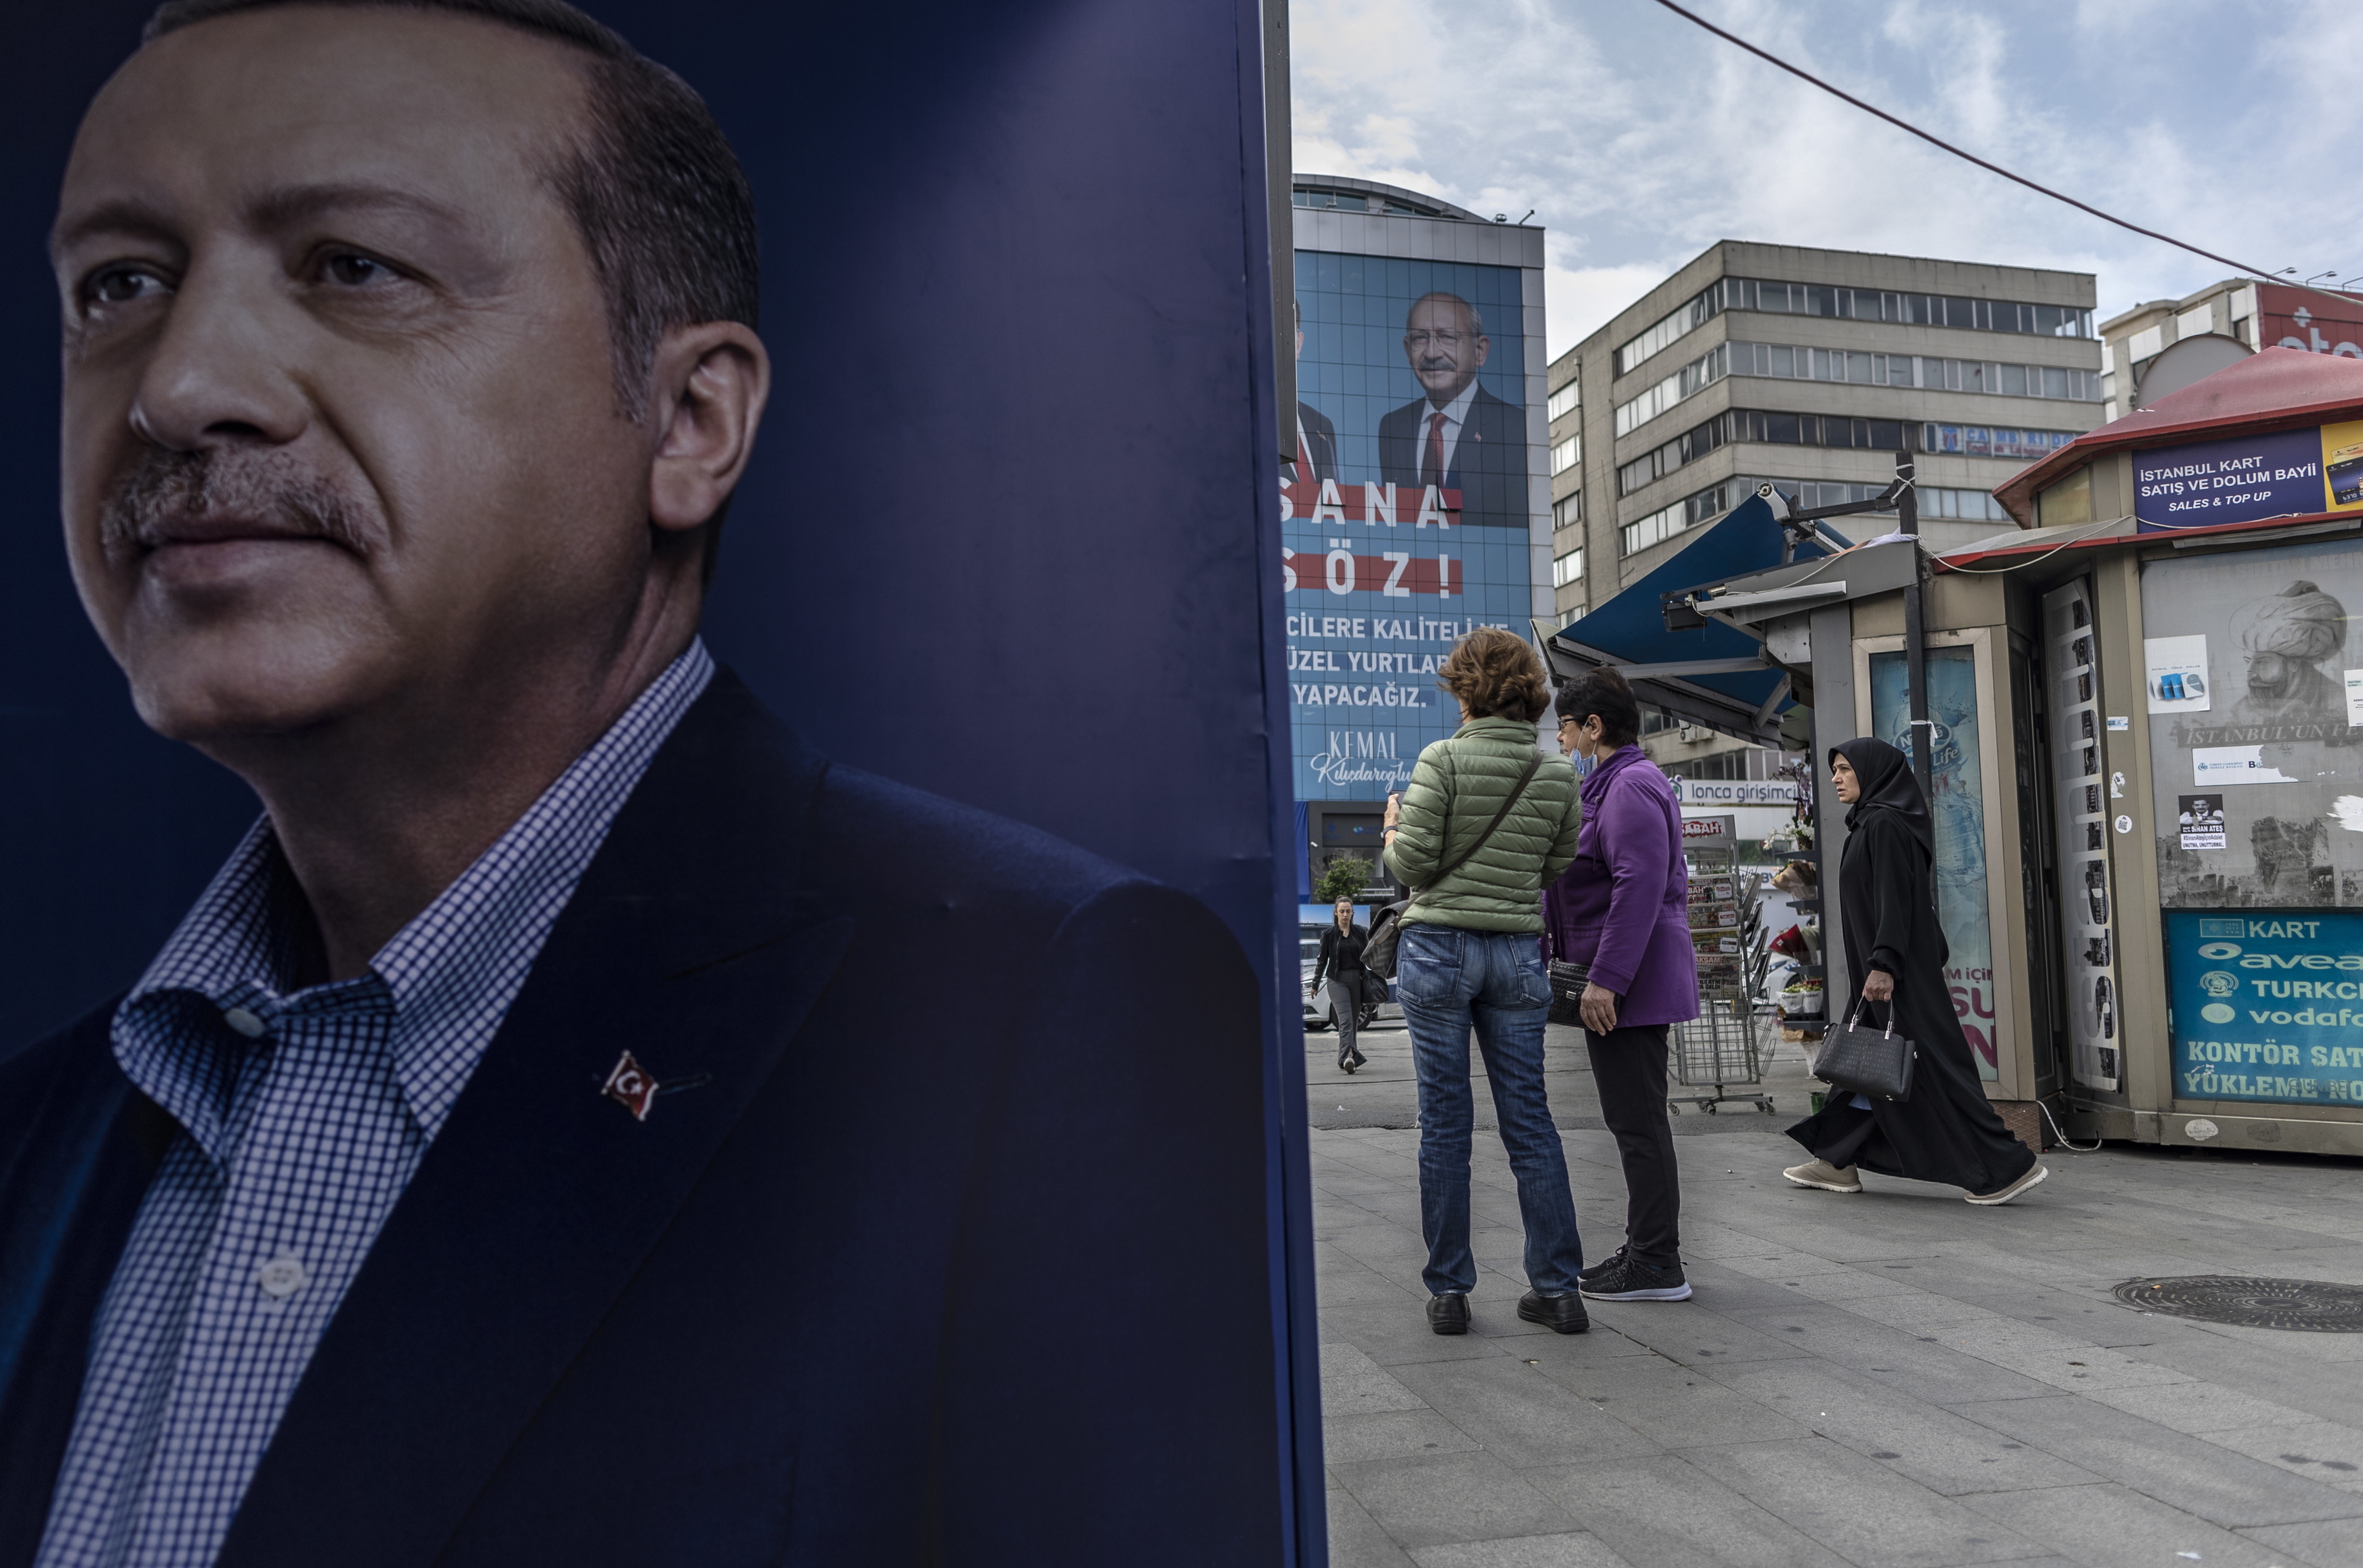 Un cartel de campaña de Erdogan y el de su rival, al fondo, en Estambul.